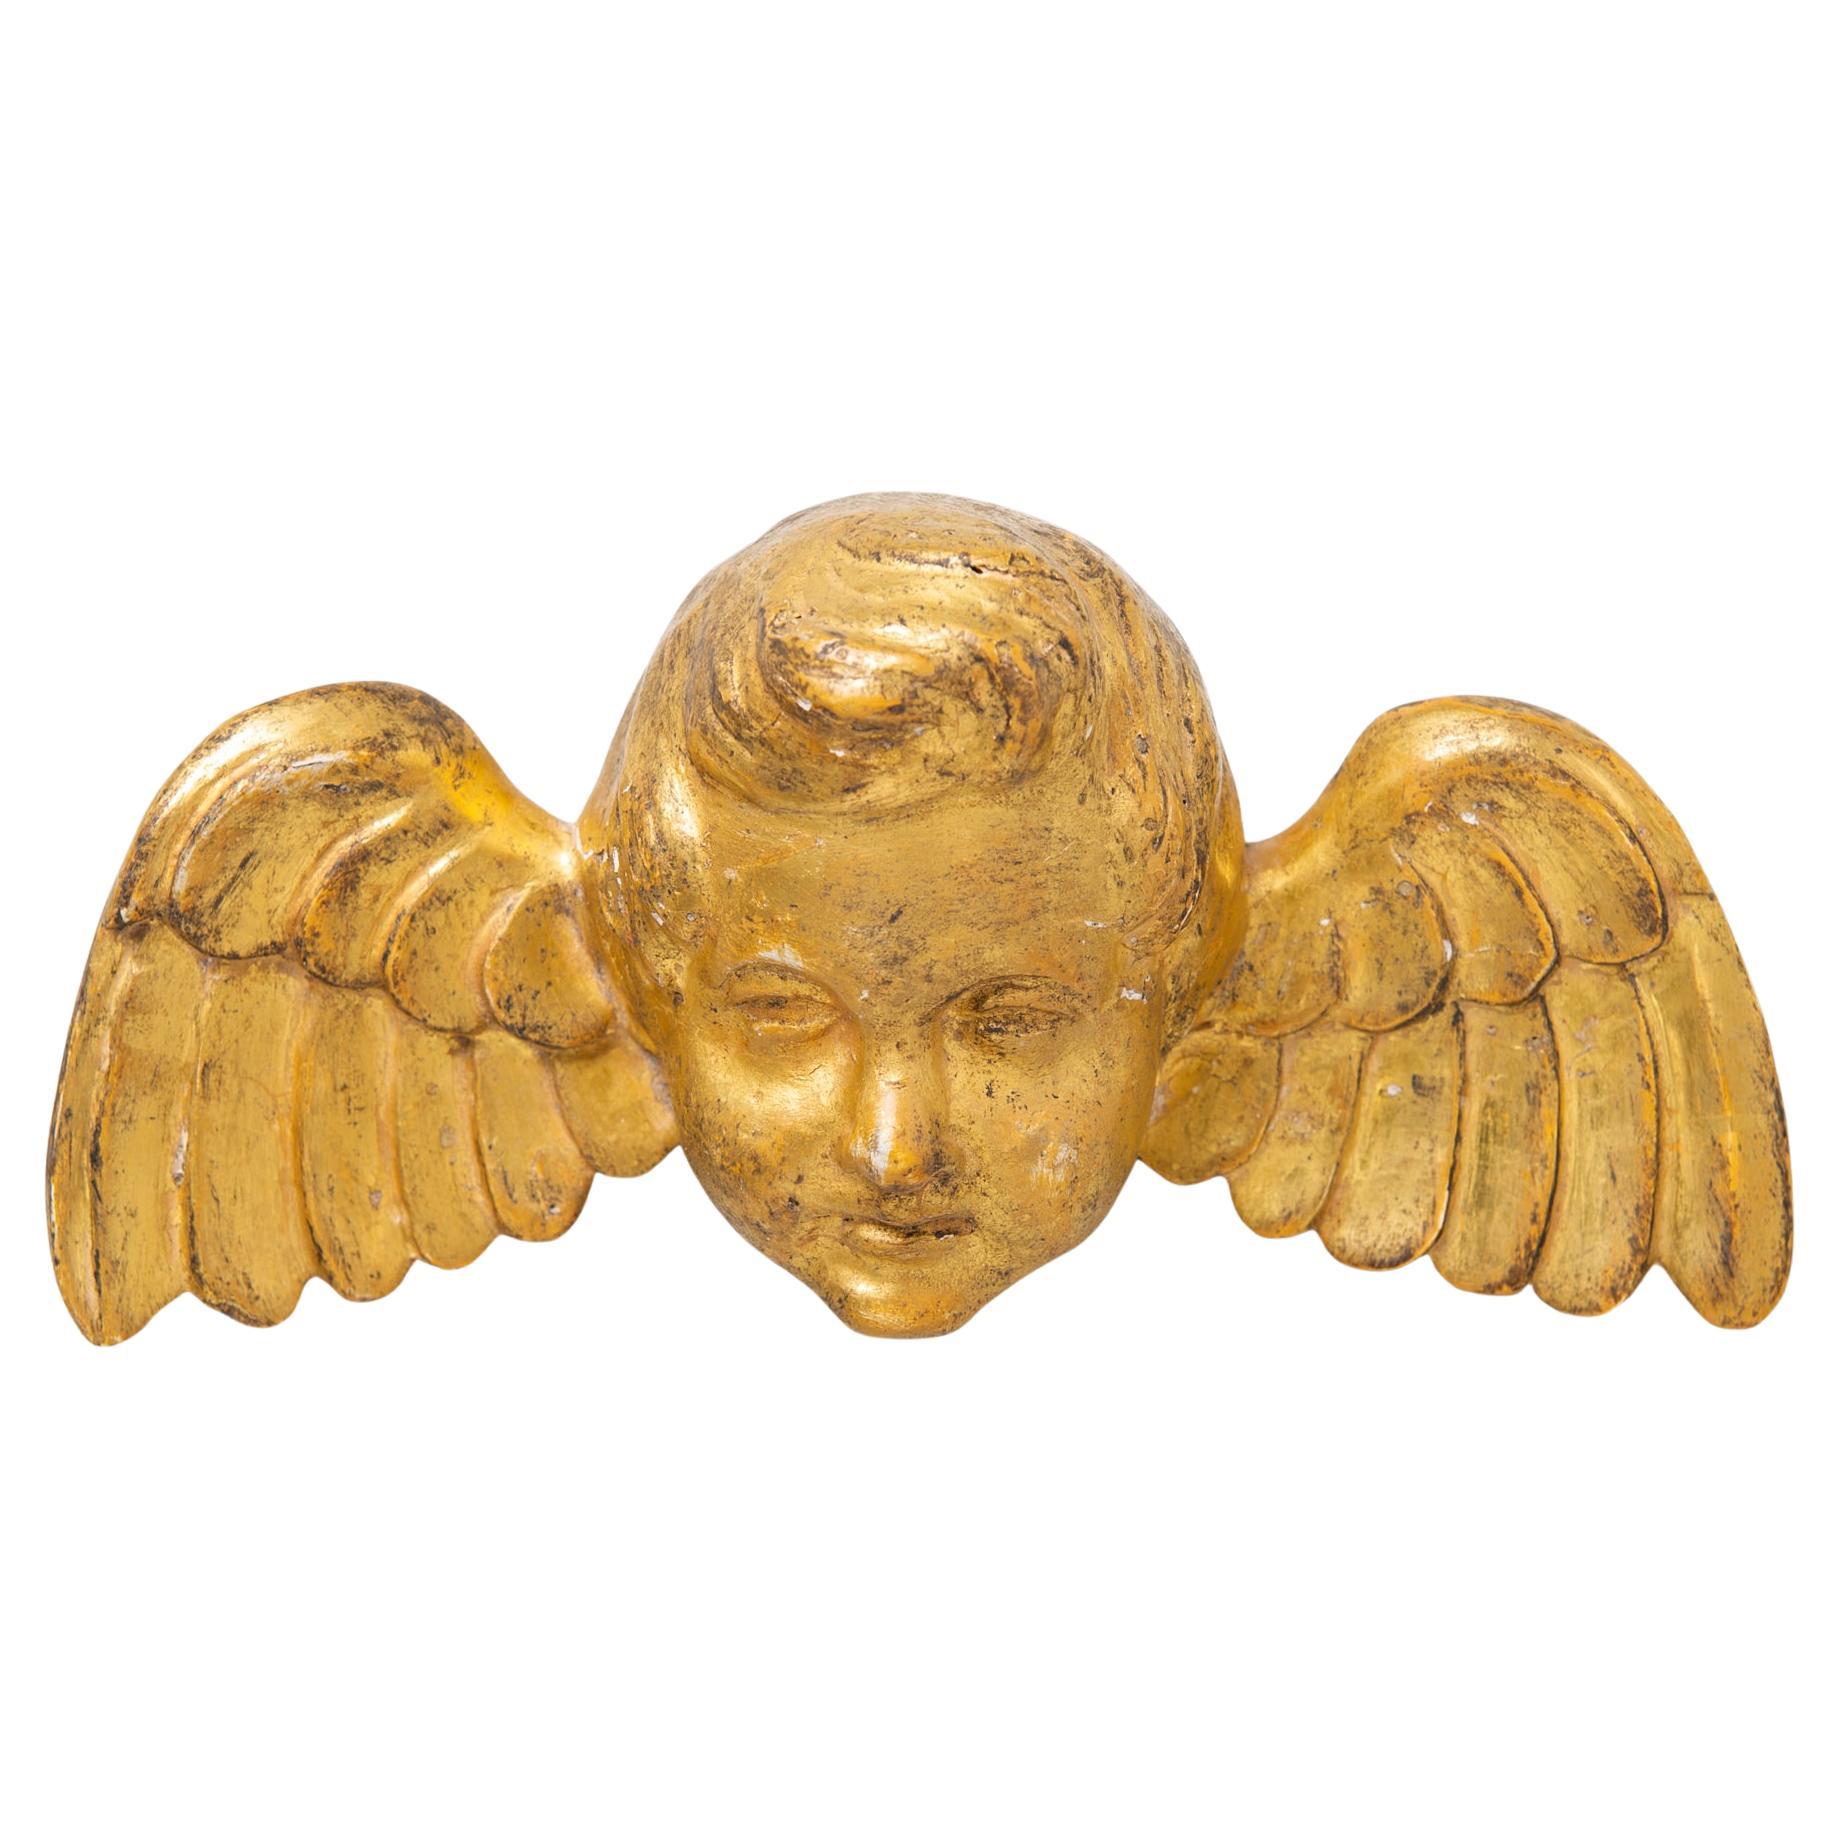 Golden Angel Head